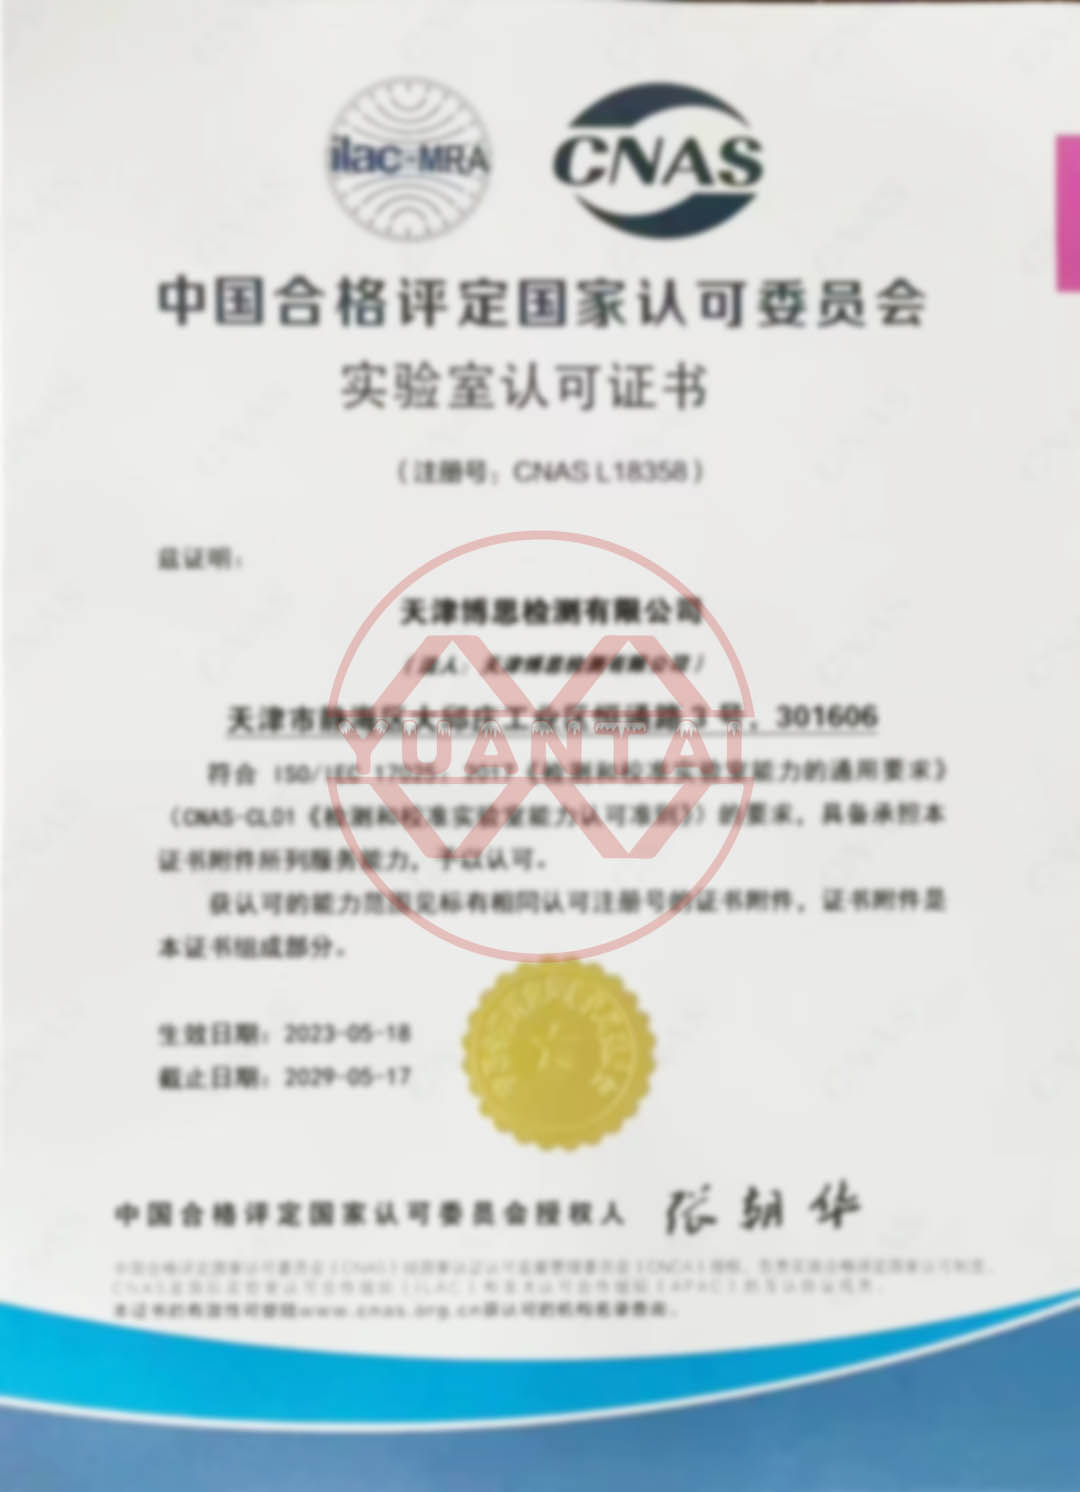 CNAS ಪ್ರಮಾಣೀಕರಣದಲ್ಲಿ ಉತ್ತೀರ್ಣರಾಗಿದ್ದಕ್ಕಾಗಿ Yuantai Derun ಸ್ಟೀಲ್ ಪೈಪ್ ಗ್ರೂಪ್‌ನ ಅಂಗಸಂಸ್ಥೆಯಾದ Tianjin Bosi Testing Co., Ltd. ಗೆ ಅಭಿನಂದನೆಗಳು.